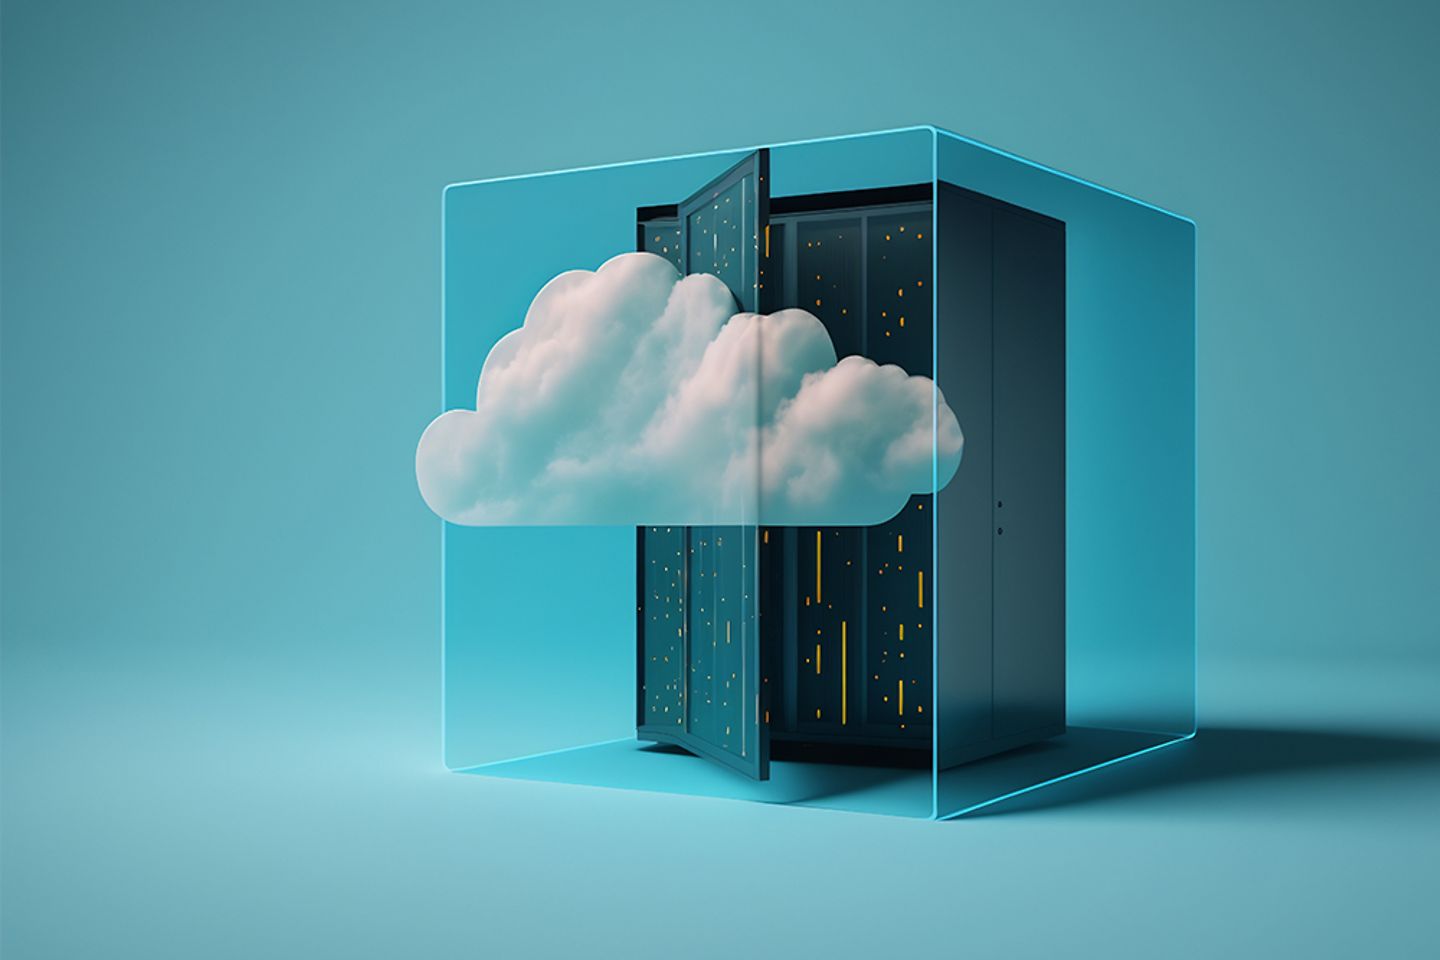 Grafik eines Serverracks und einer Cloud in einem Glasbehälter